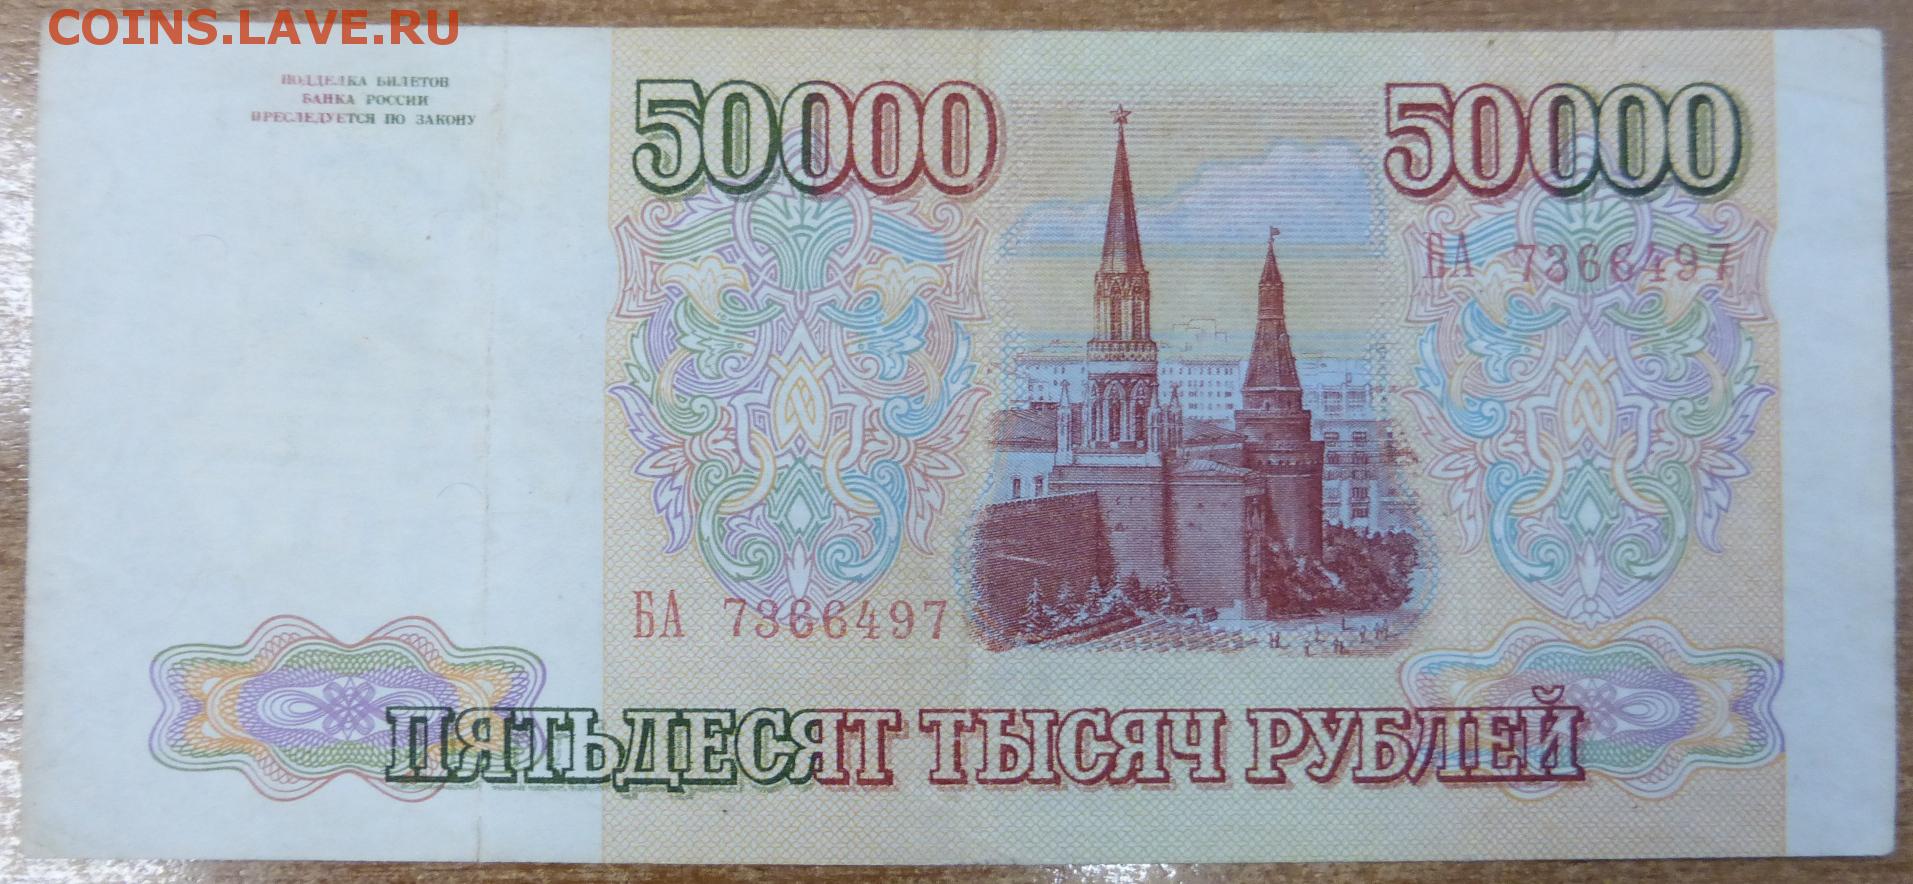 200 рублей 90. 50000 Рублей 90 годов. 1000 Рублей 90 годов. 200 Рублей 90 годов. 100 Рублей 90 годов.